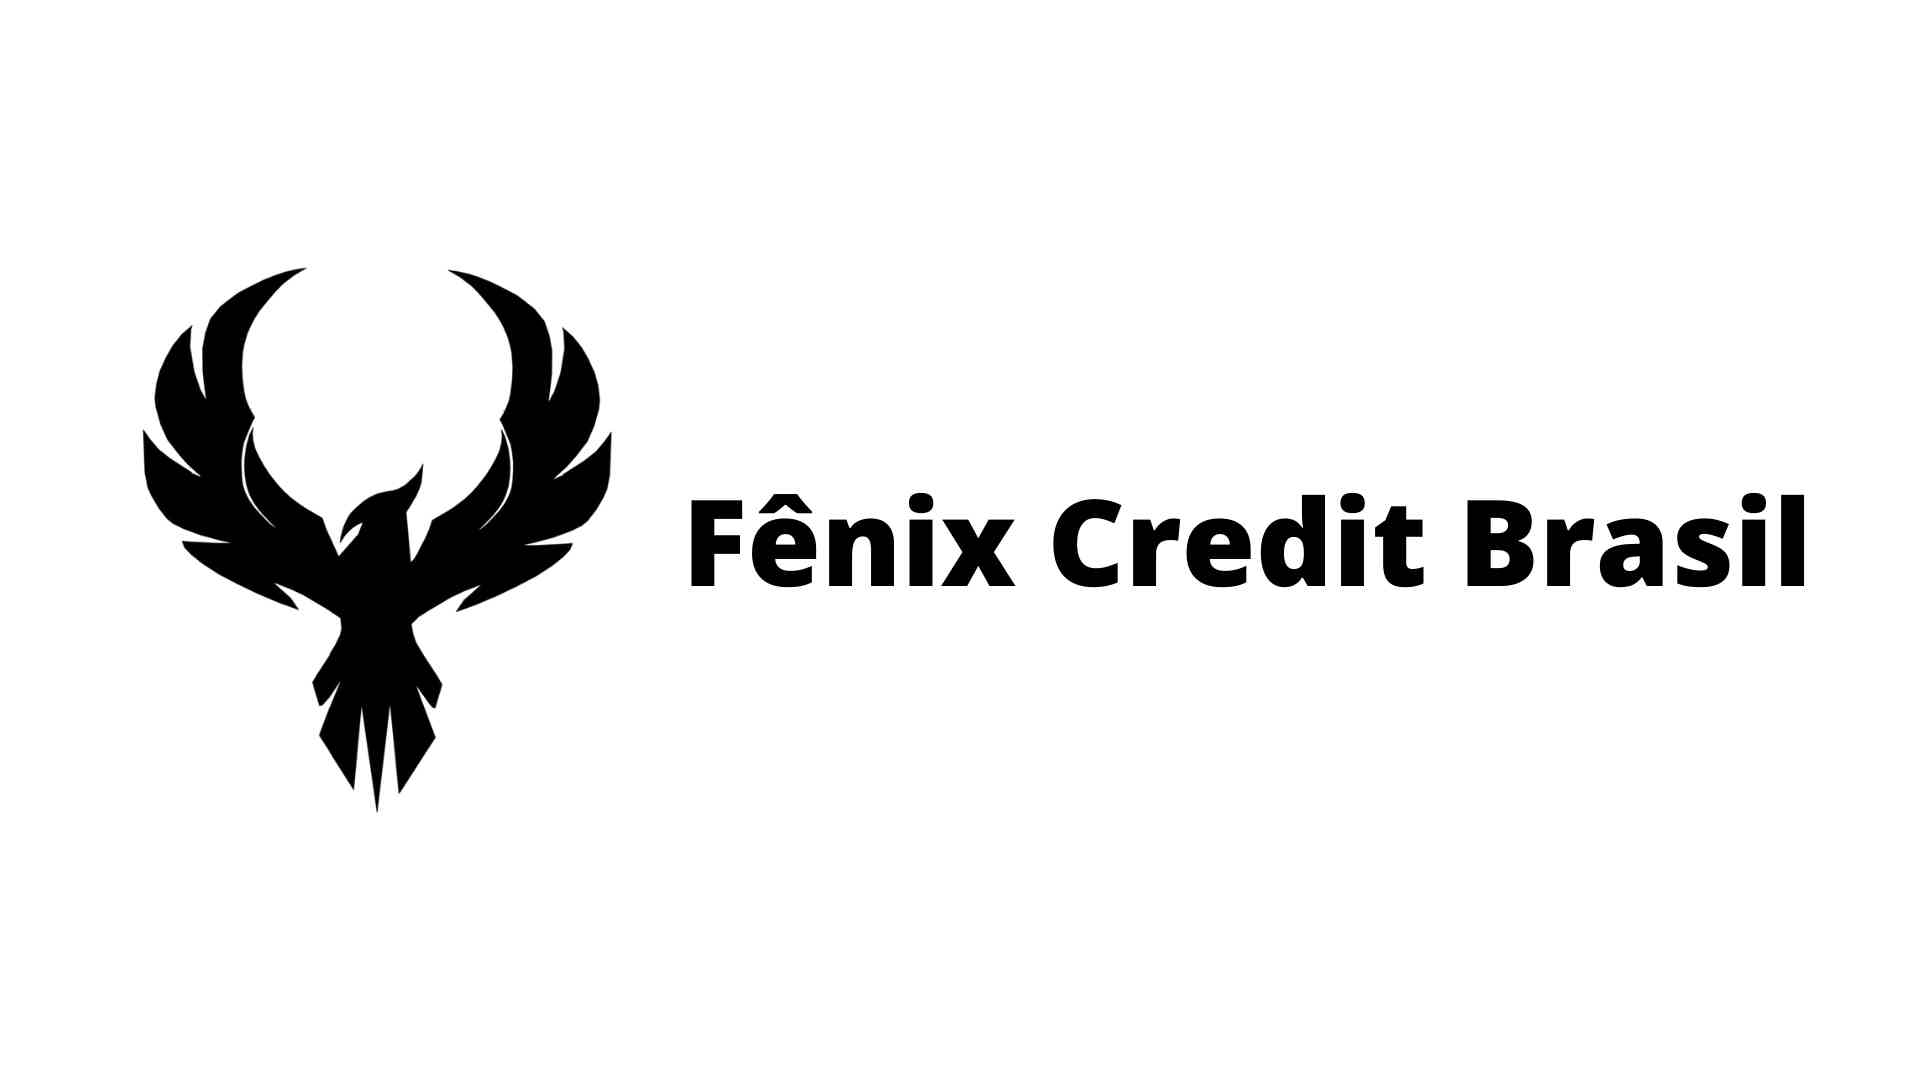 Então, como solicitar o empréstimo Fênix Credit Brasil? Fonte: Senhor Finanças / Fênix Credit Brasil.